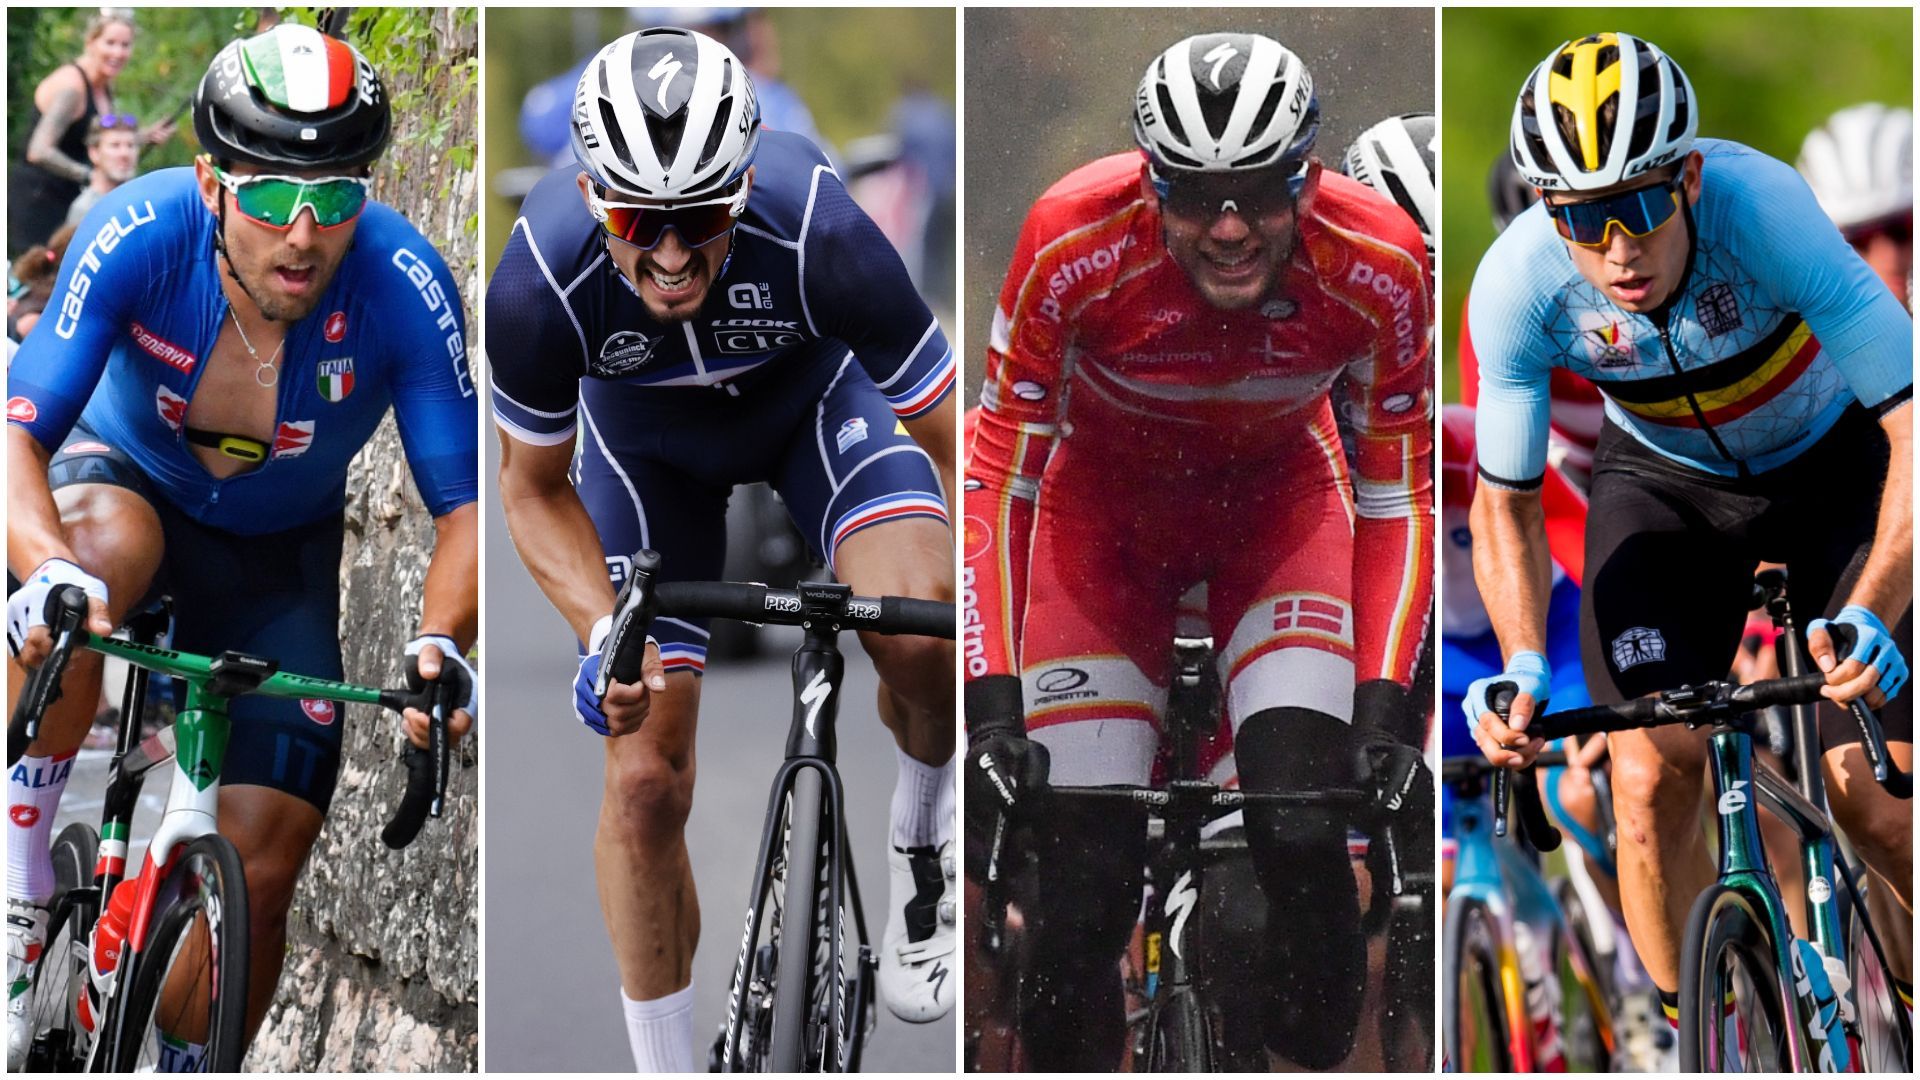 Sonny Colbrelli, Julian Alaphilippe, Kasper Asgreen et Wout van Aert font partie des favoris pour les Mondiaux 2021 de cyclisme à Louvain.